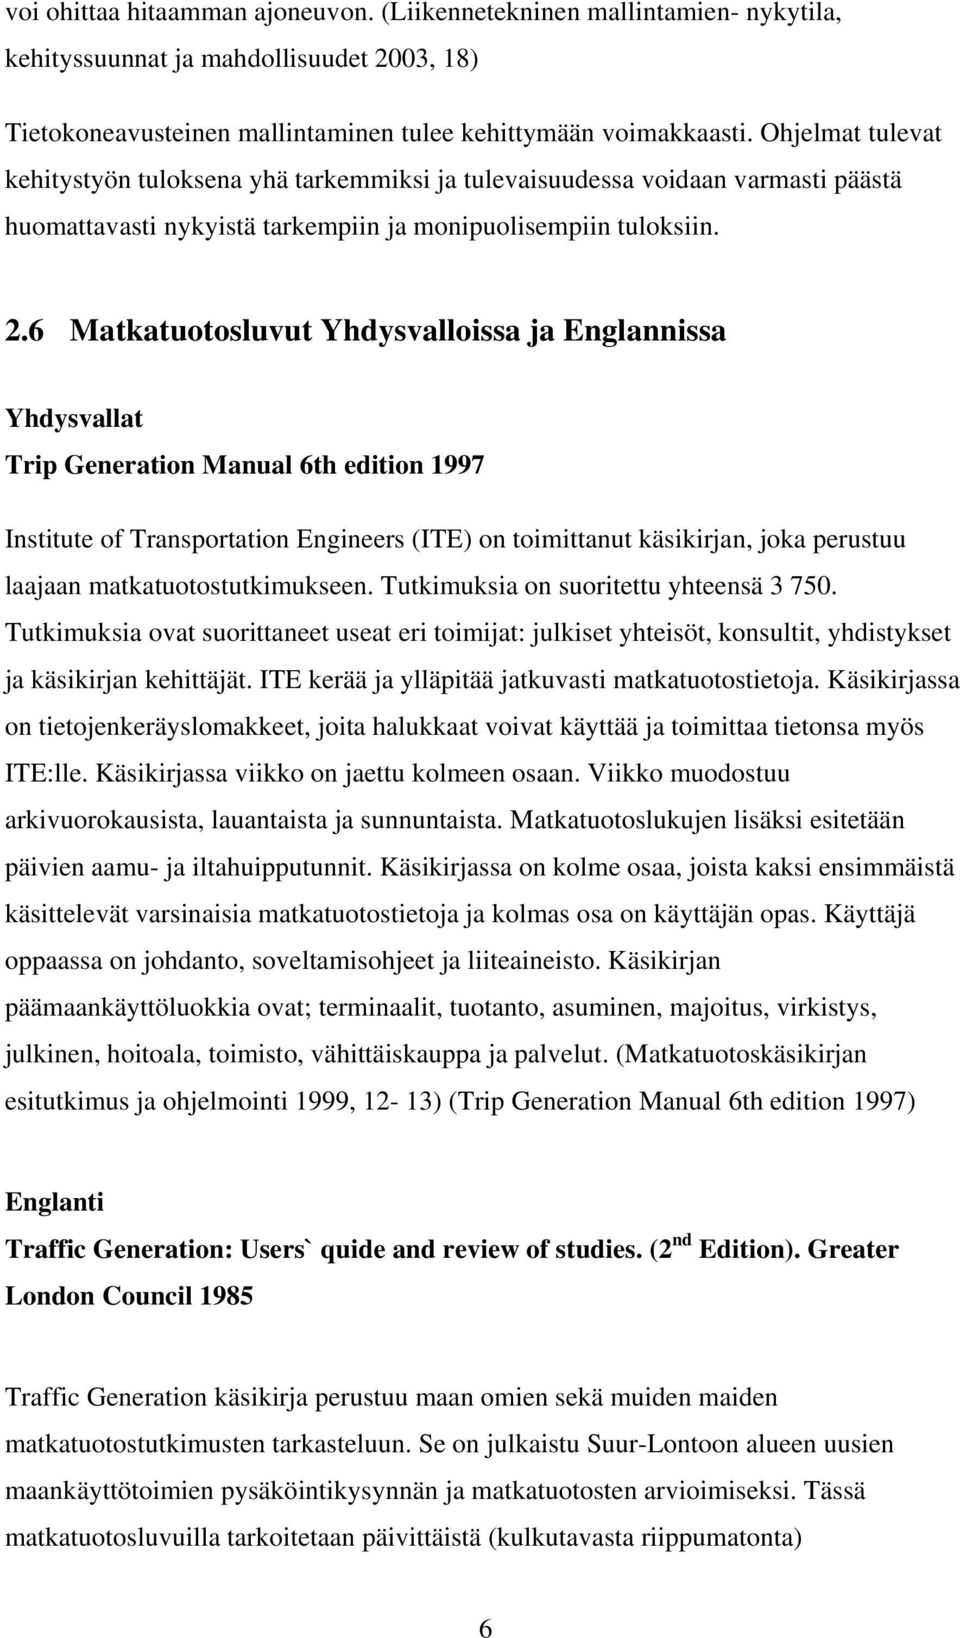 6 Matkatuotosluvut Yhdysvalloissa ja Englannissa Yhdysvallat Trip Generation Manual 6th edition 1997 Institute of Transportation Engineers (ITE) on toimittanut käsikirjan, joka perustuu laajaan